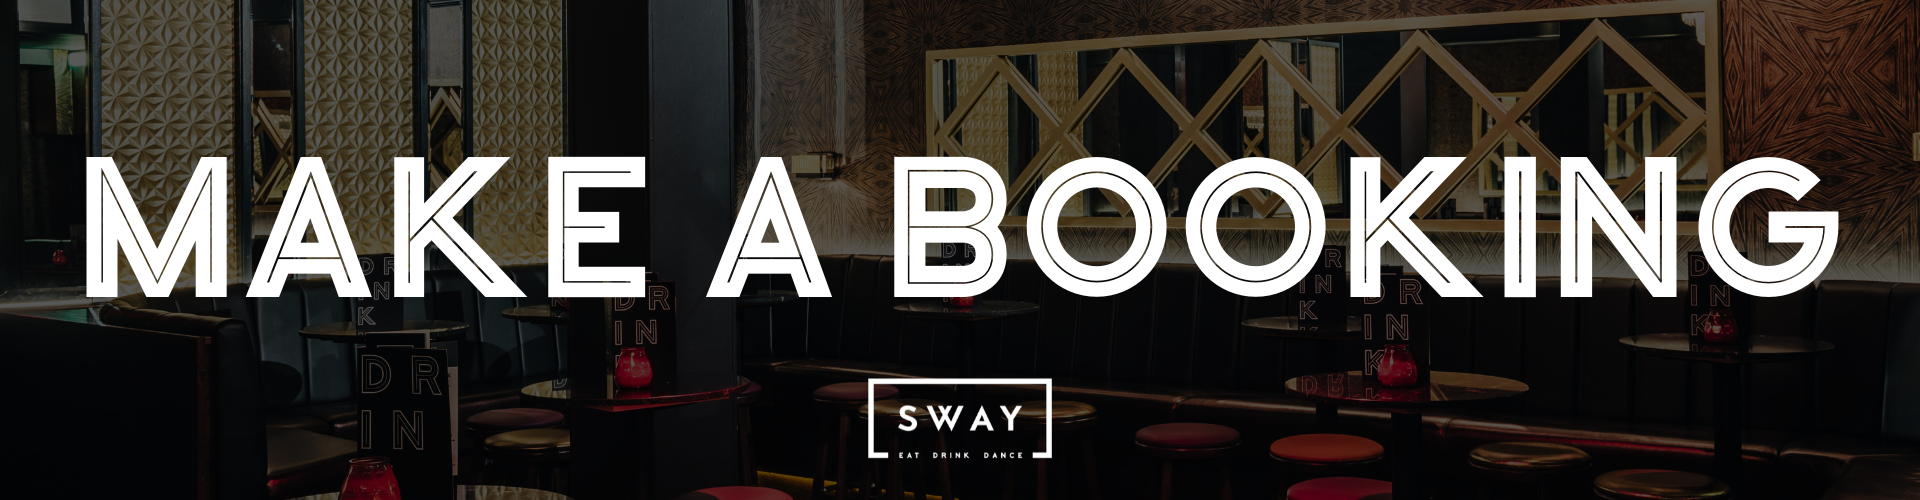 Make a Booking at Sway